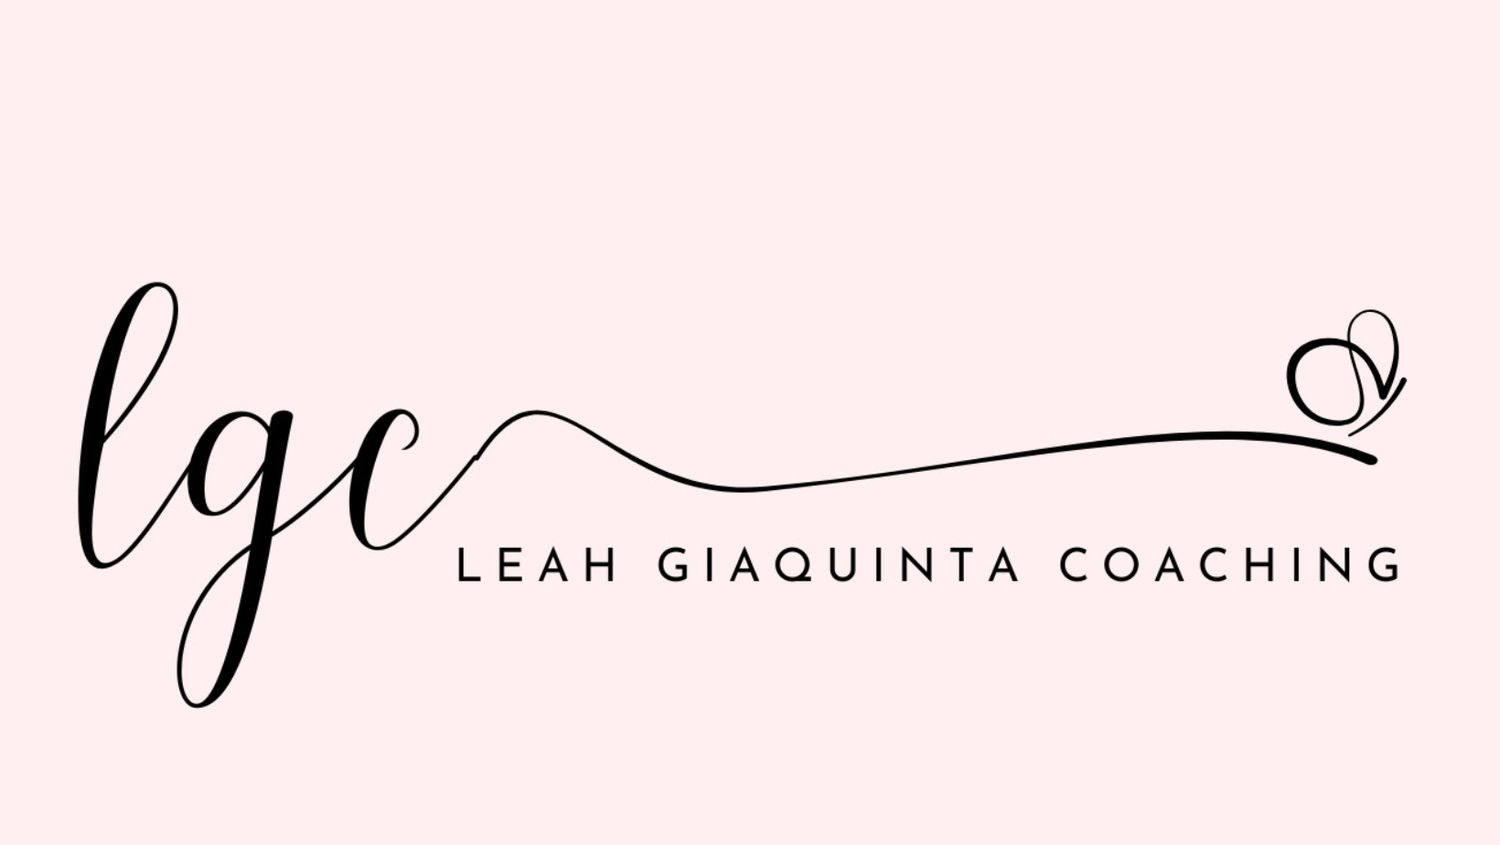 LEAH GIAQUINTA COACHING, LLC